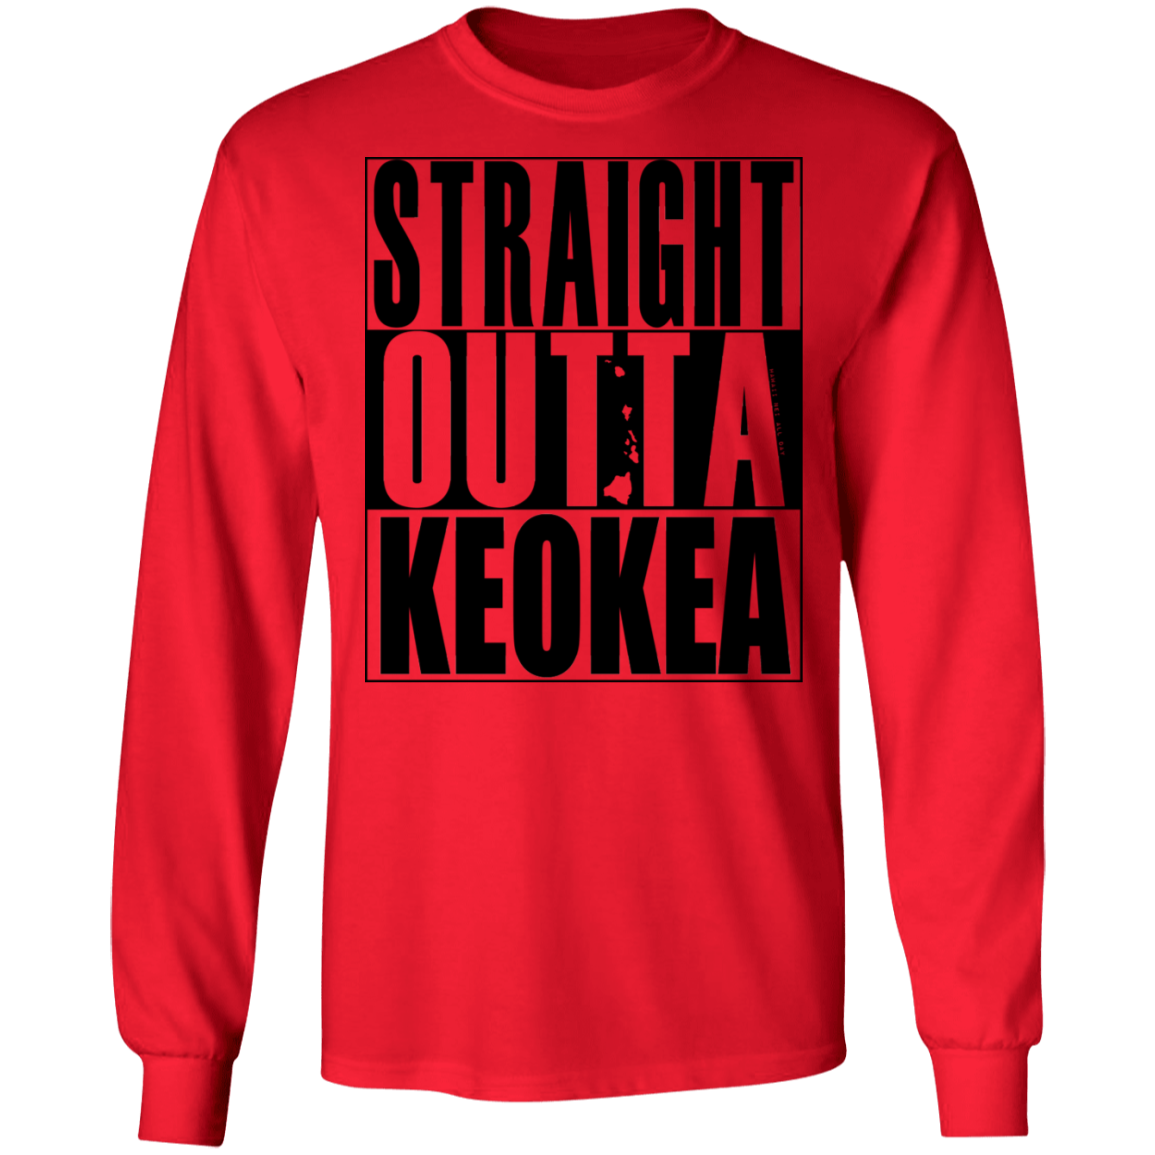 Straight Outta Keokea (black ink) LS T-Shirt